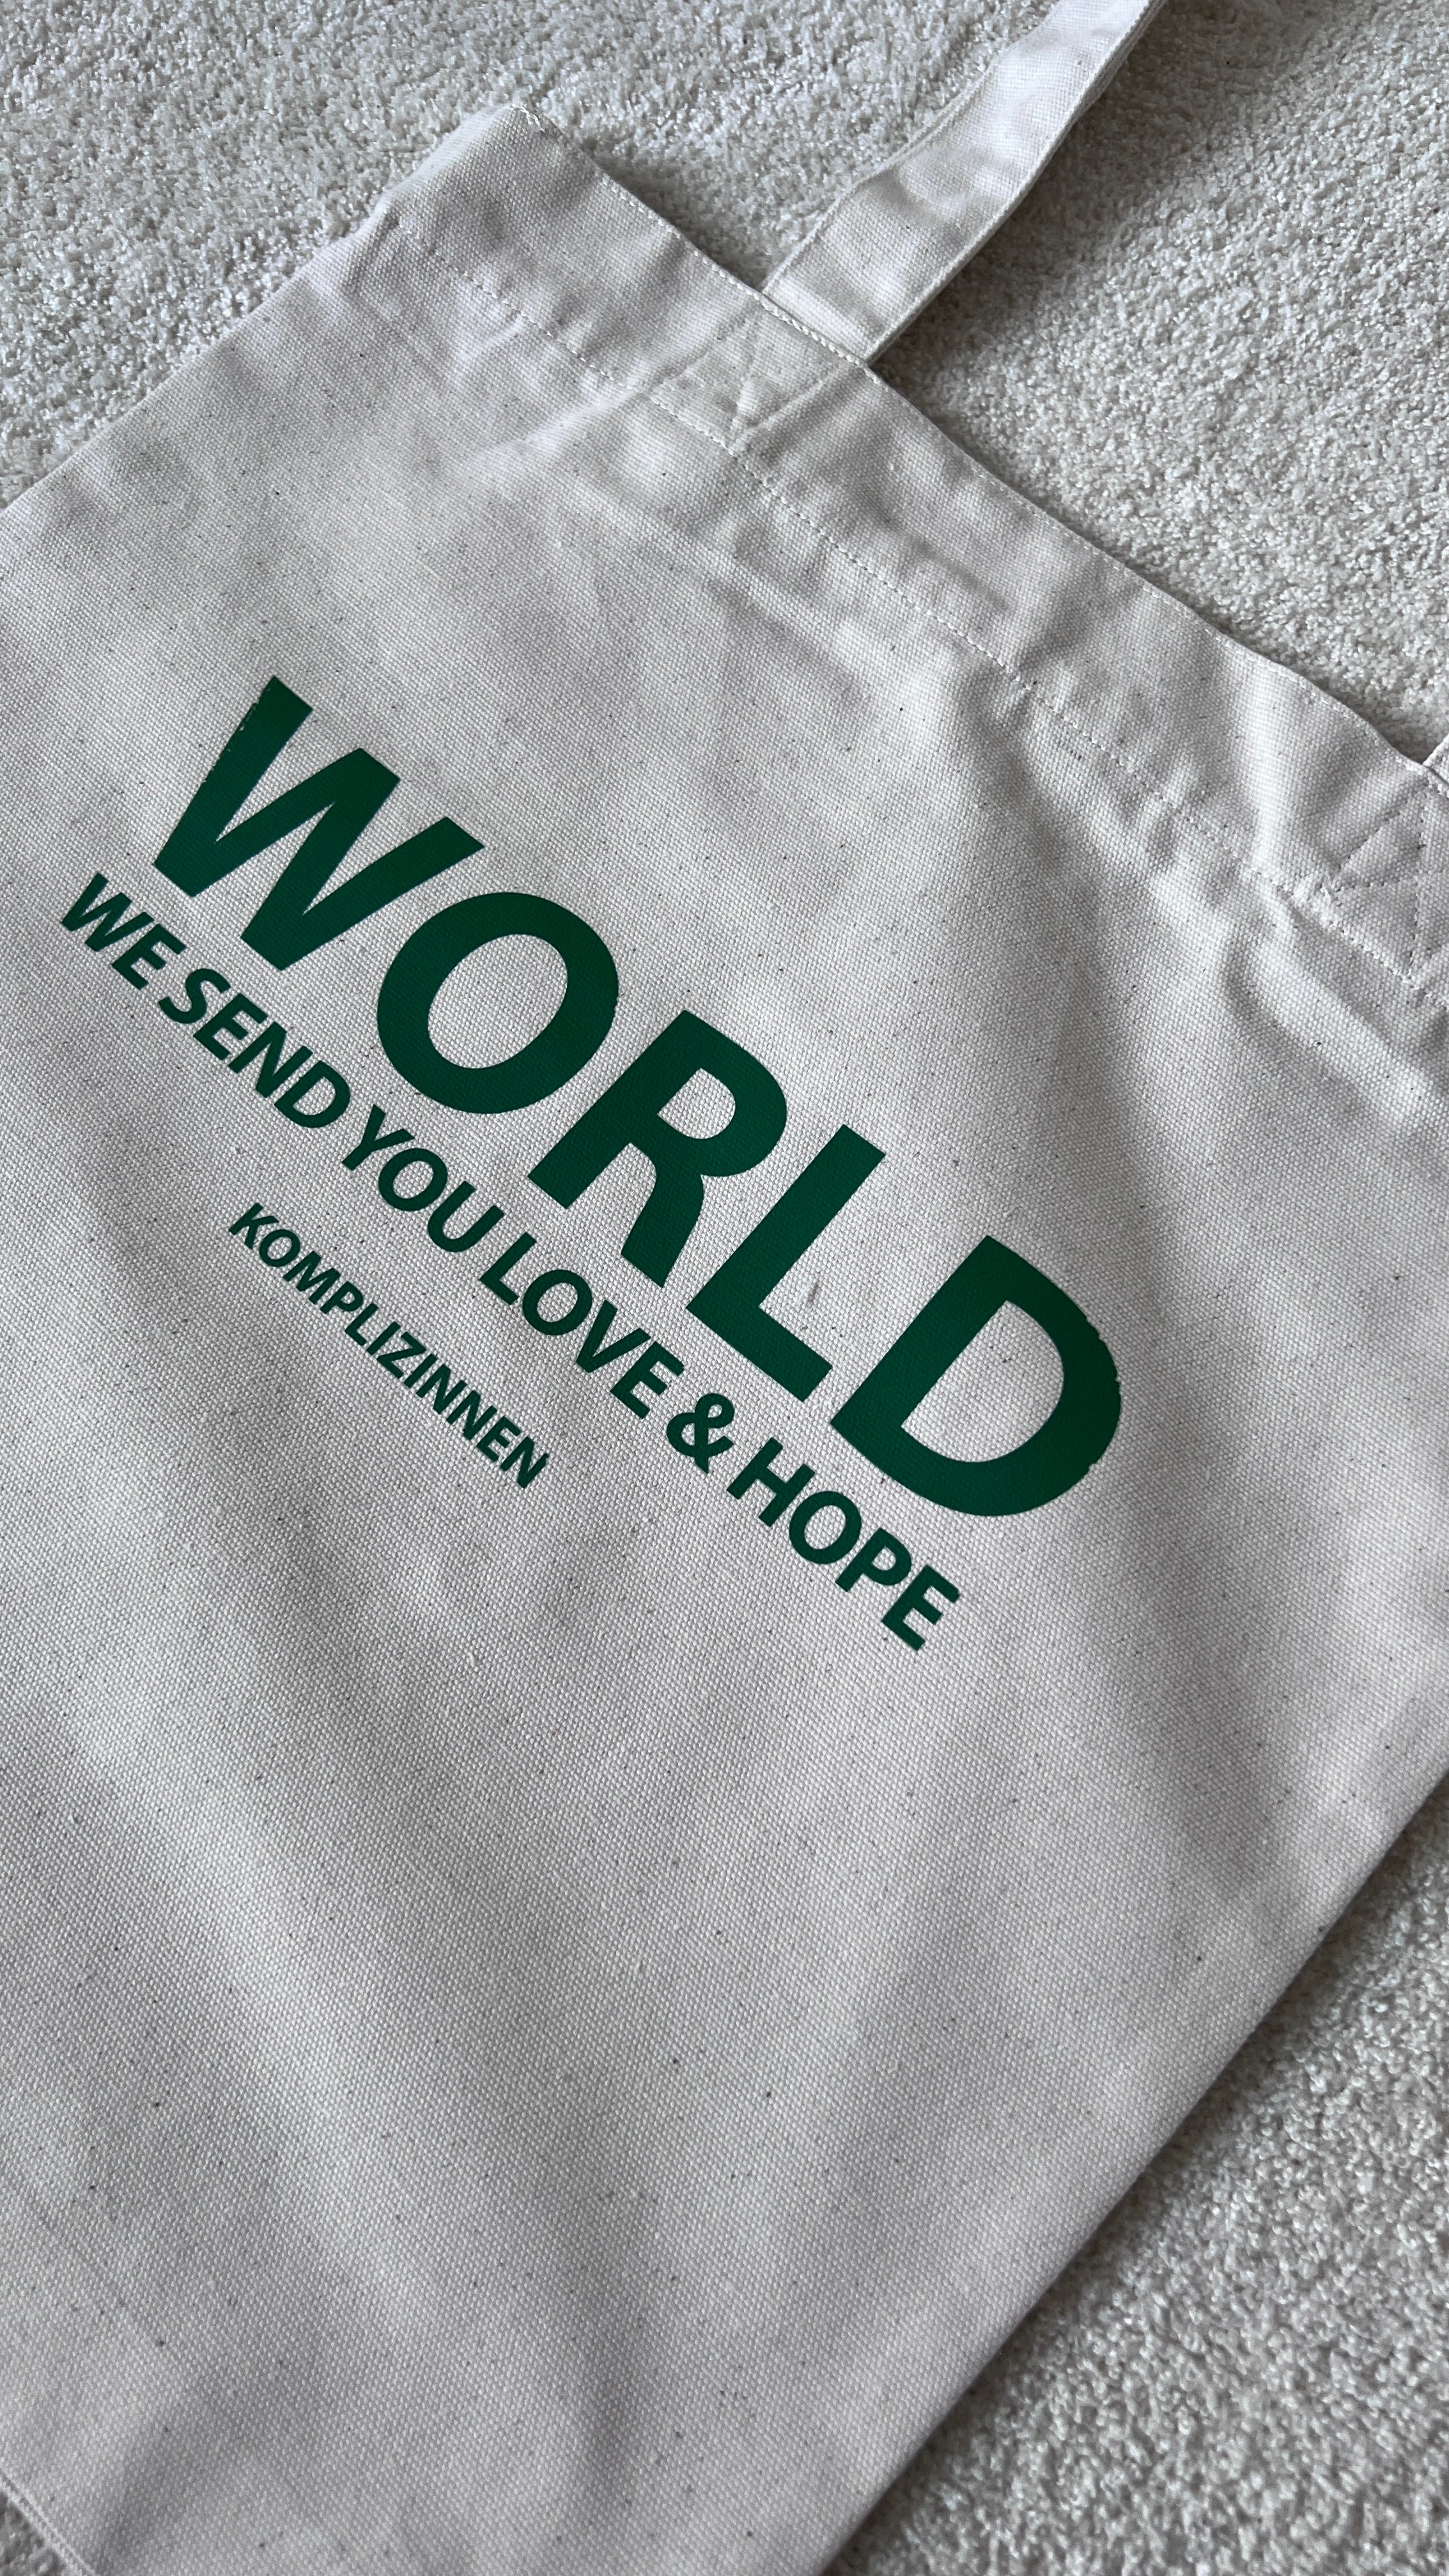 World Bag